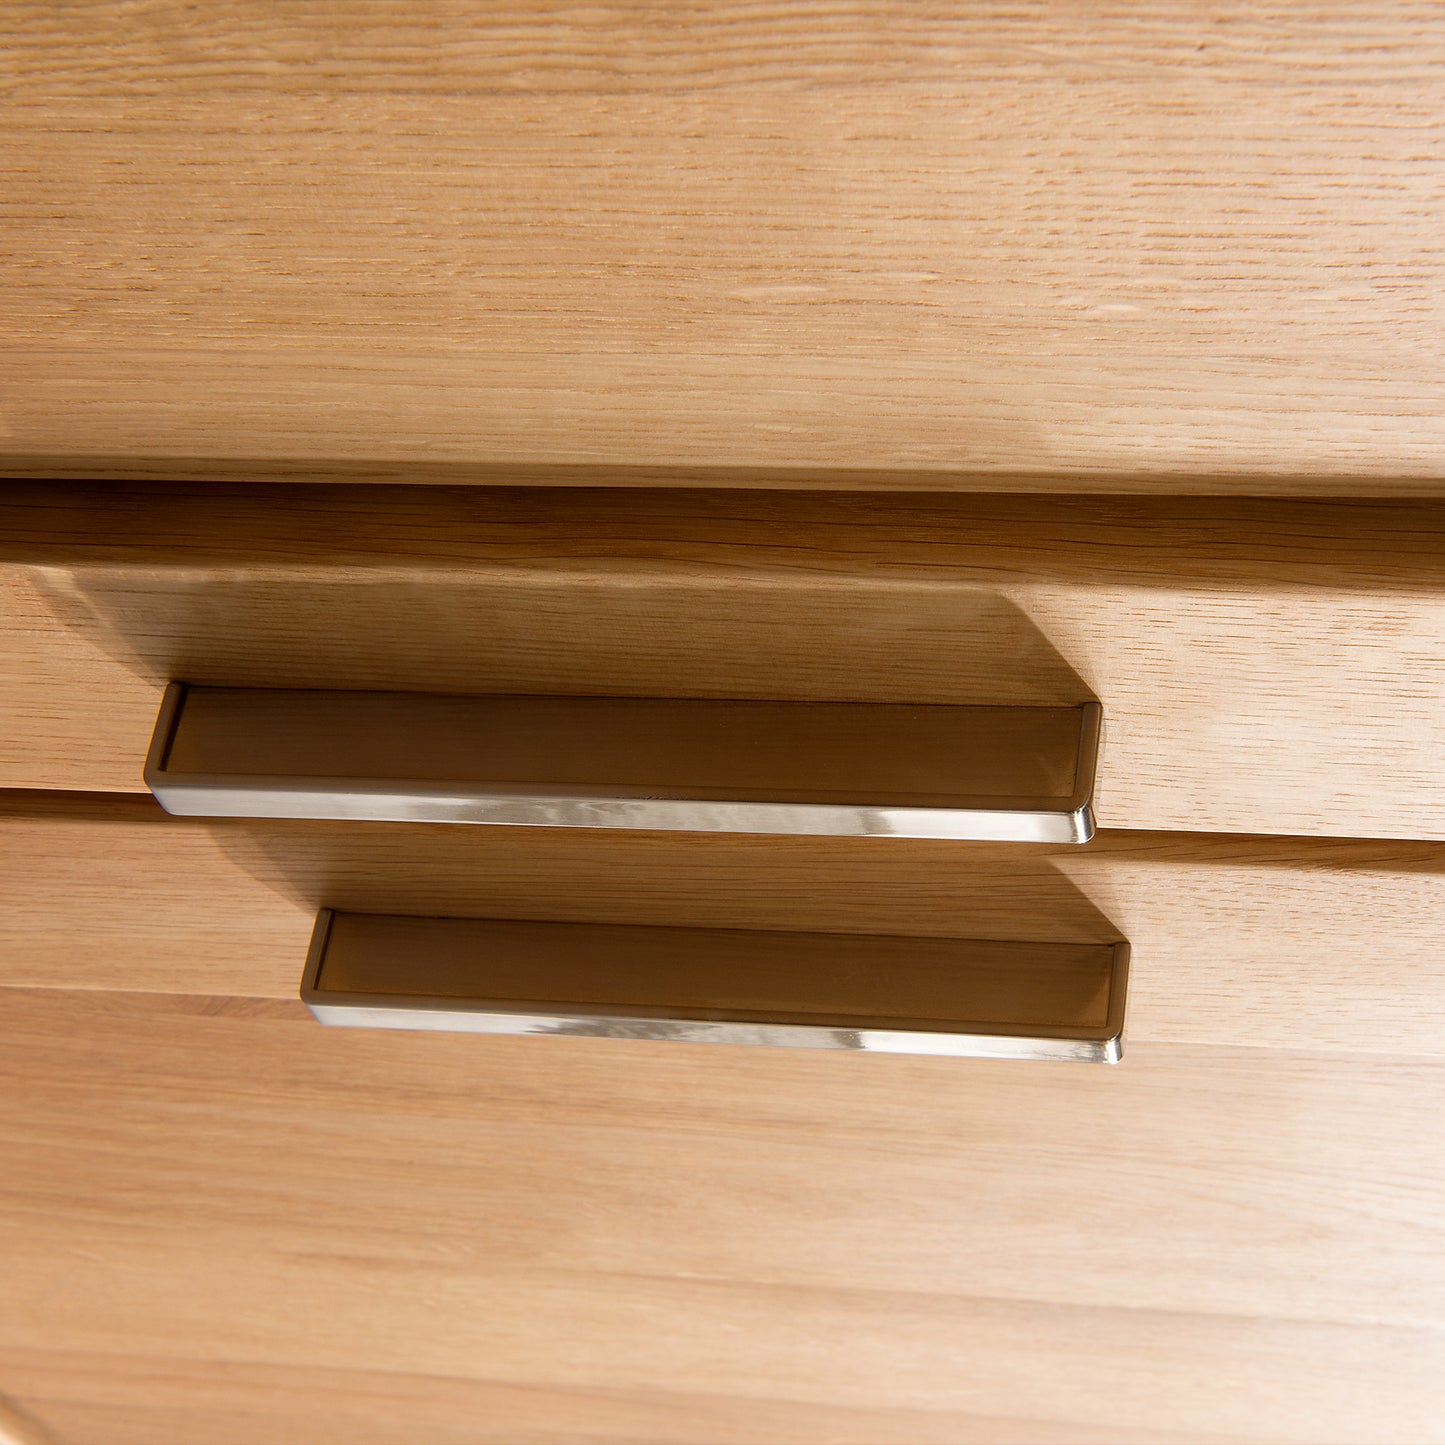 
                  
                    Detailbild silberne Griffe einer Schublade aus Holz
                  
                